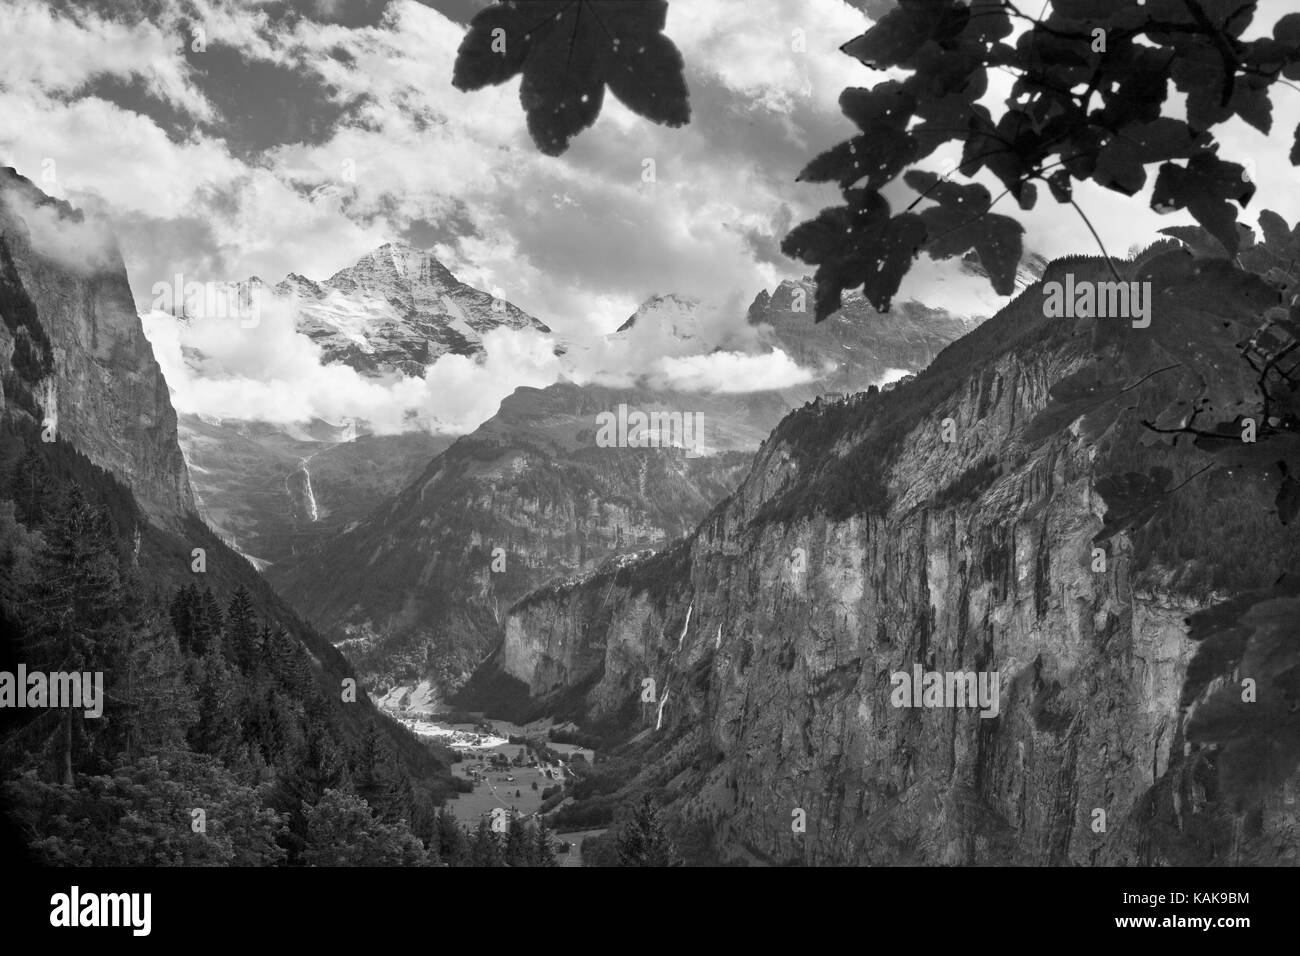 La spettacolare valle di Lauterbrunnen con il Breithorn in testa alla valle, da Staubbachbänkli sotto Wengen, Oberland Bernese, Svizzera Foto Stock